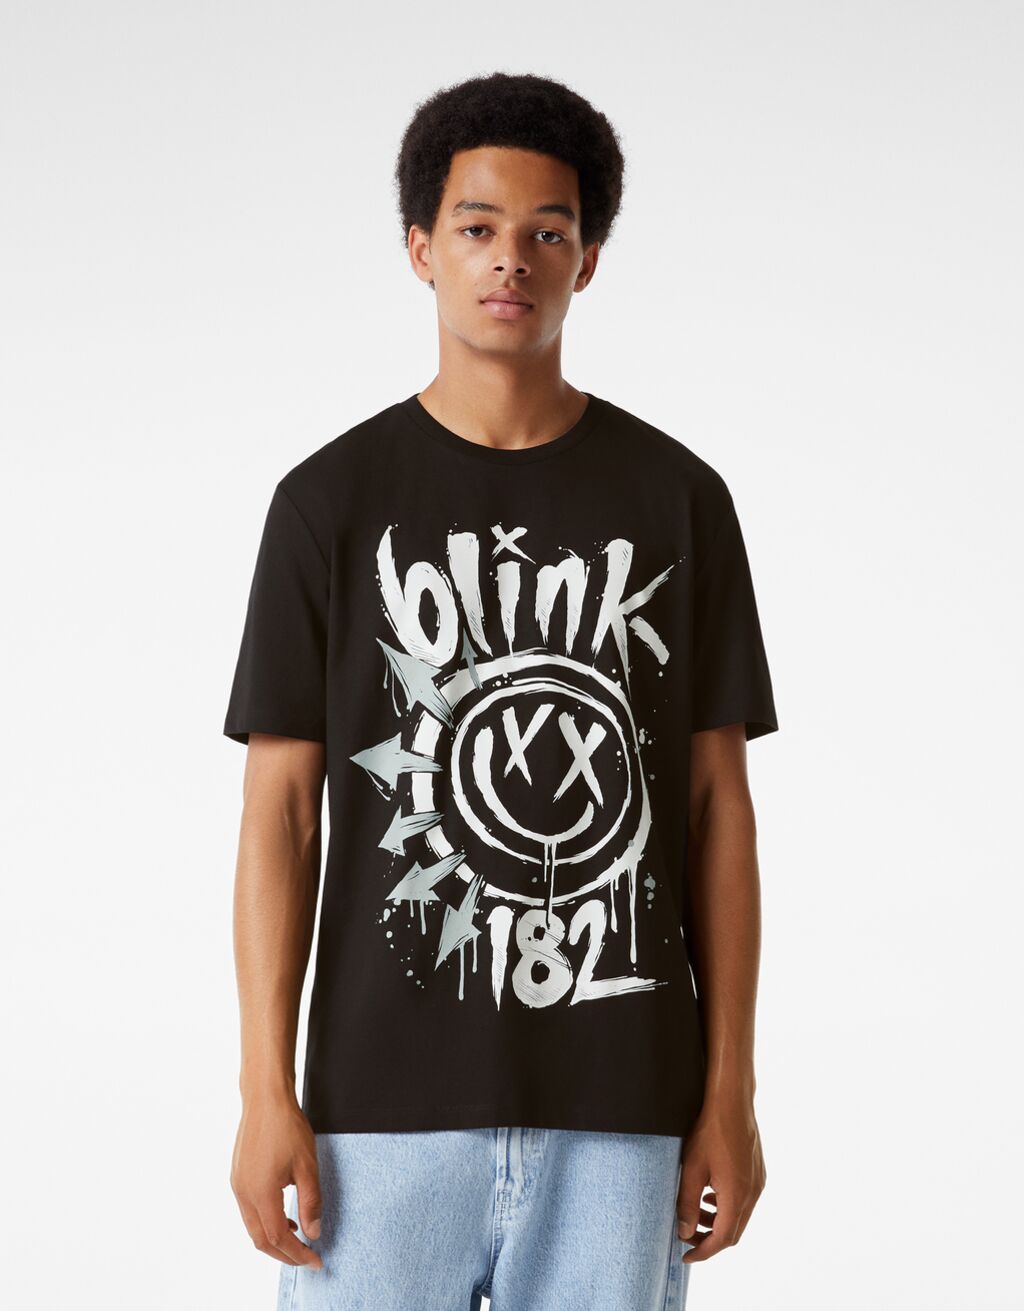 Tricou mânecă scurtă regular fit cu imprimeu Blink 182